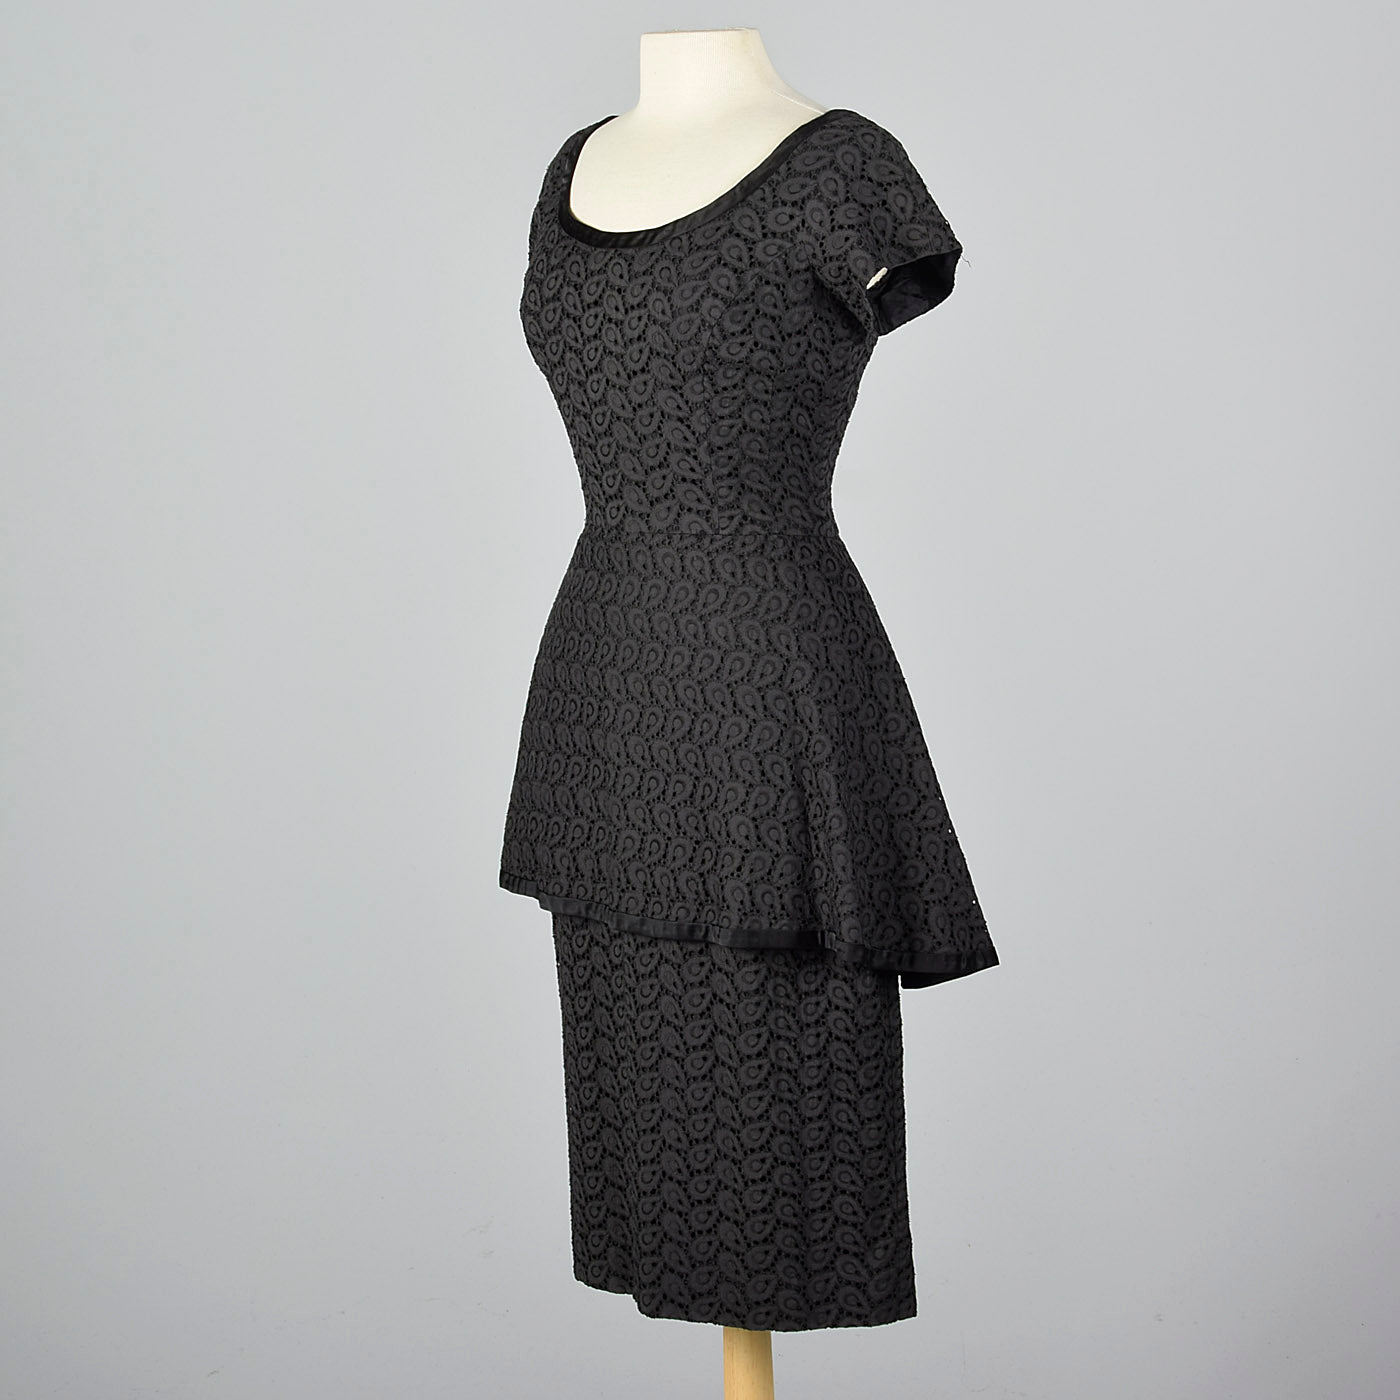 1950s Eyelet Overlay Dress with Large Peplum Waist